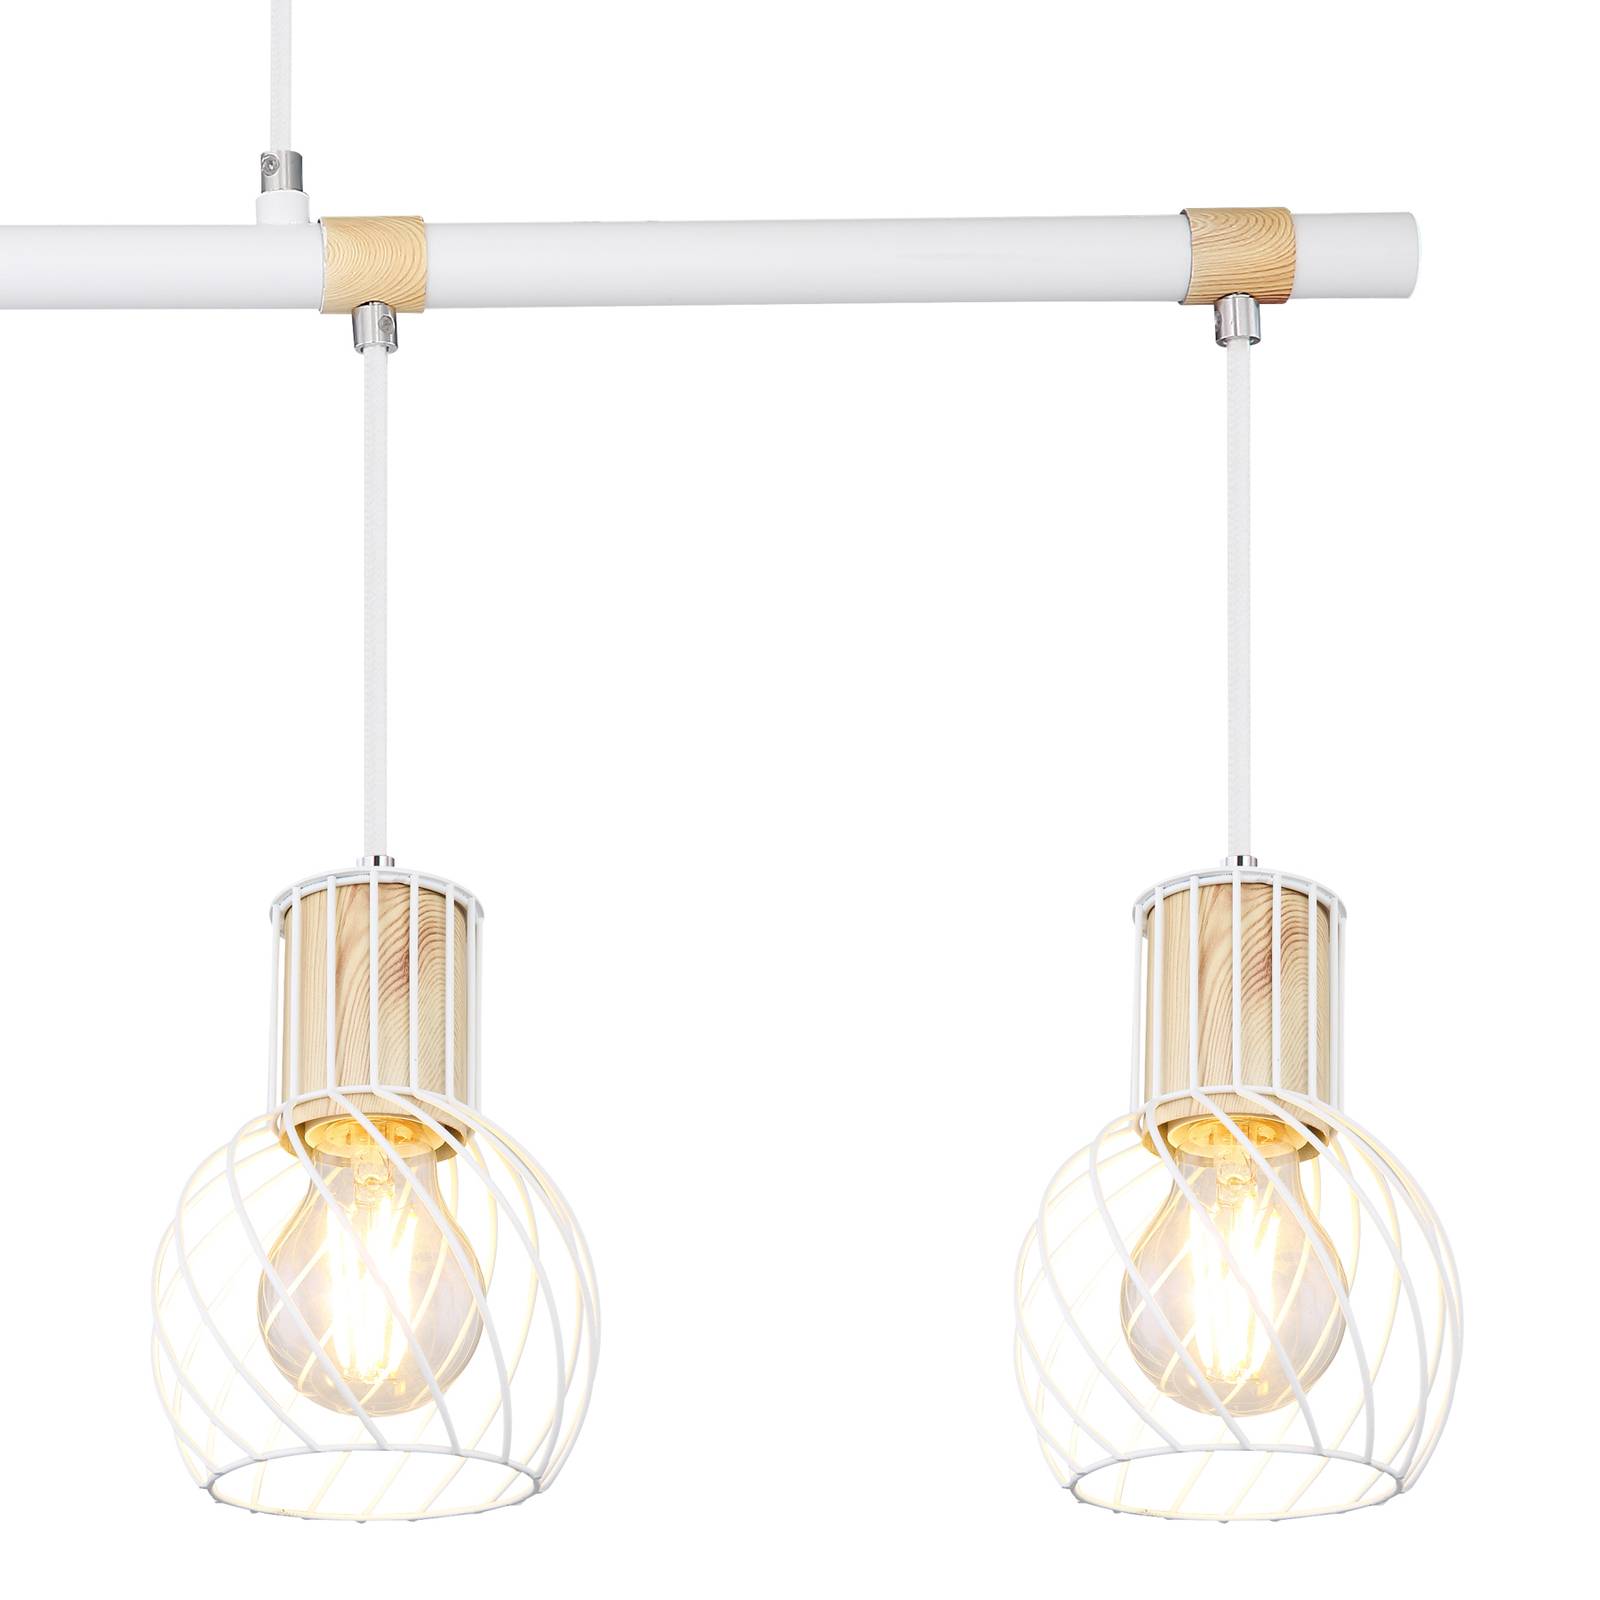 Luise hængelampe i hvid og trælook 4 lyskilder